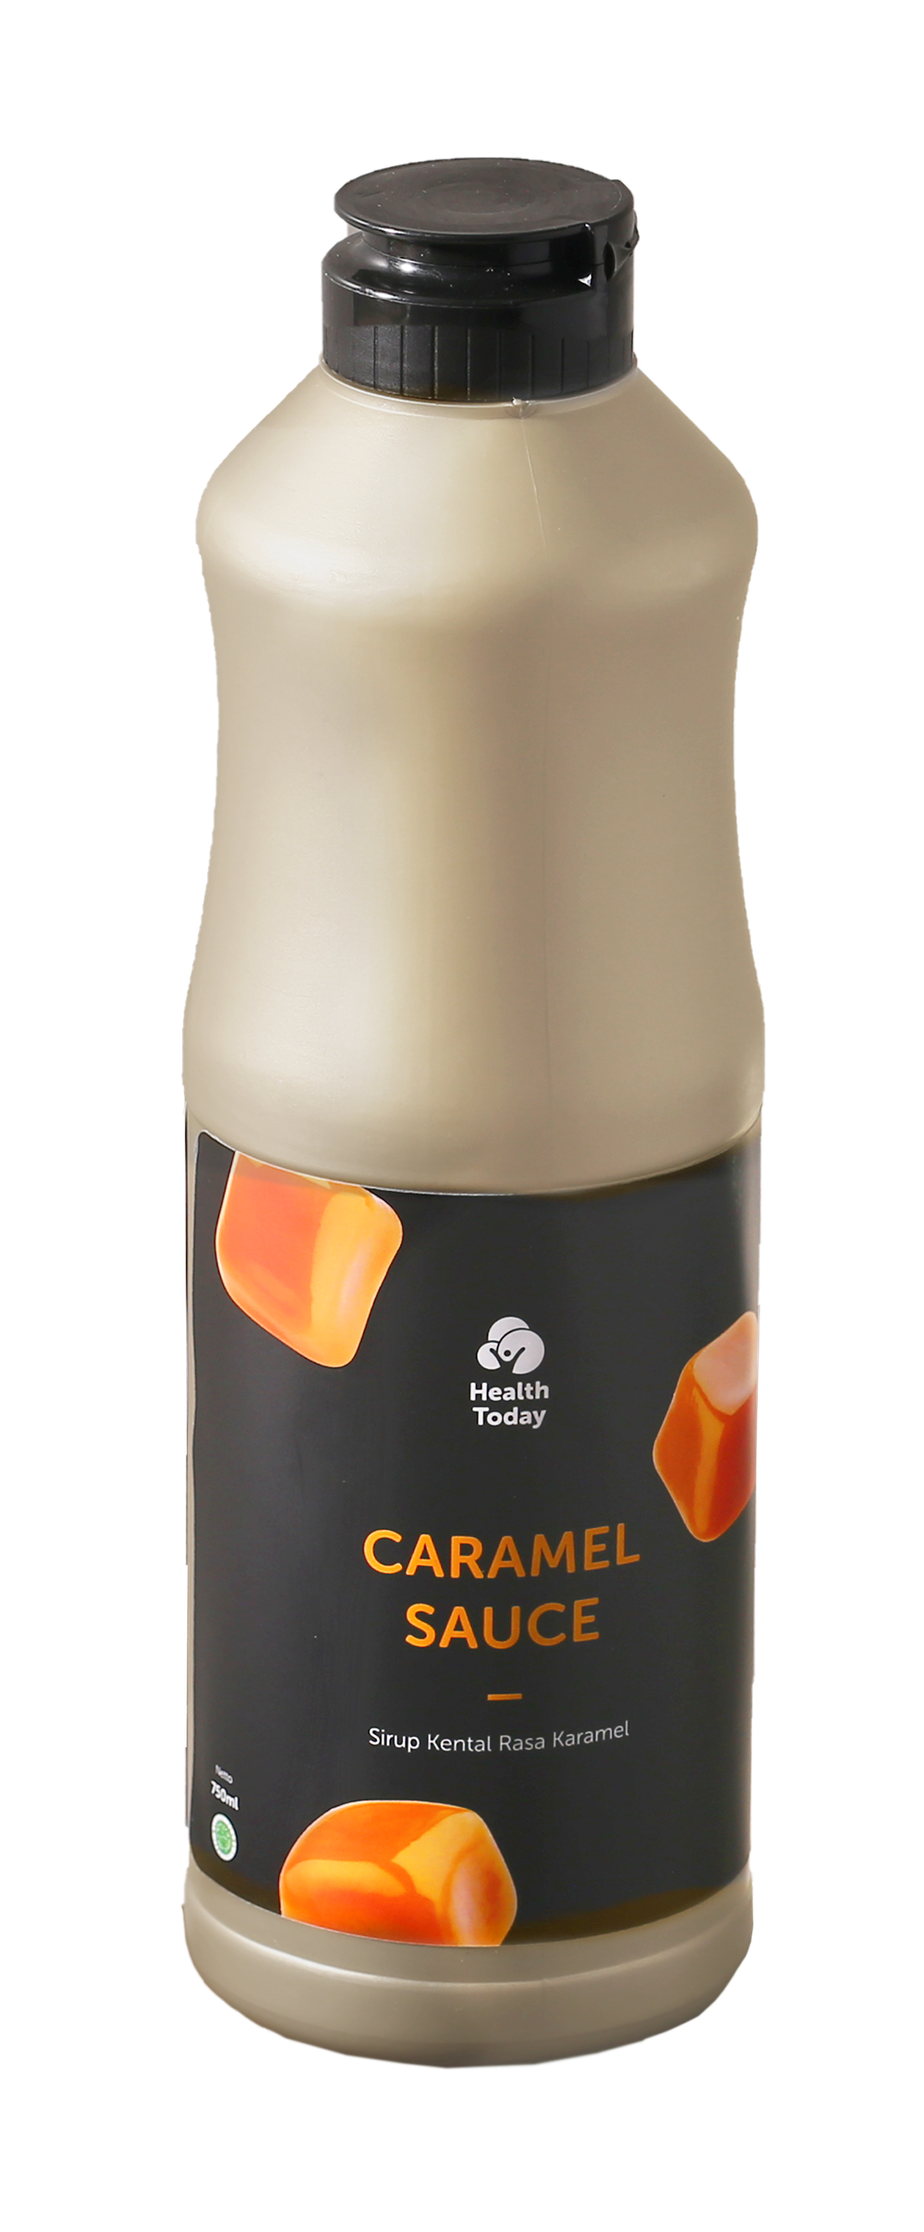 Caramel Sauce main image